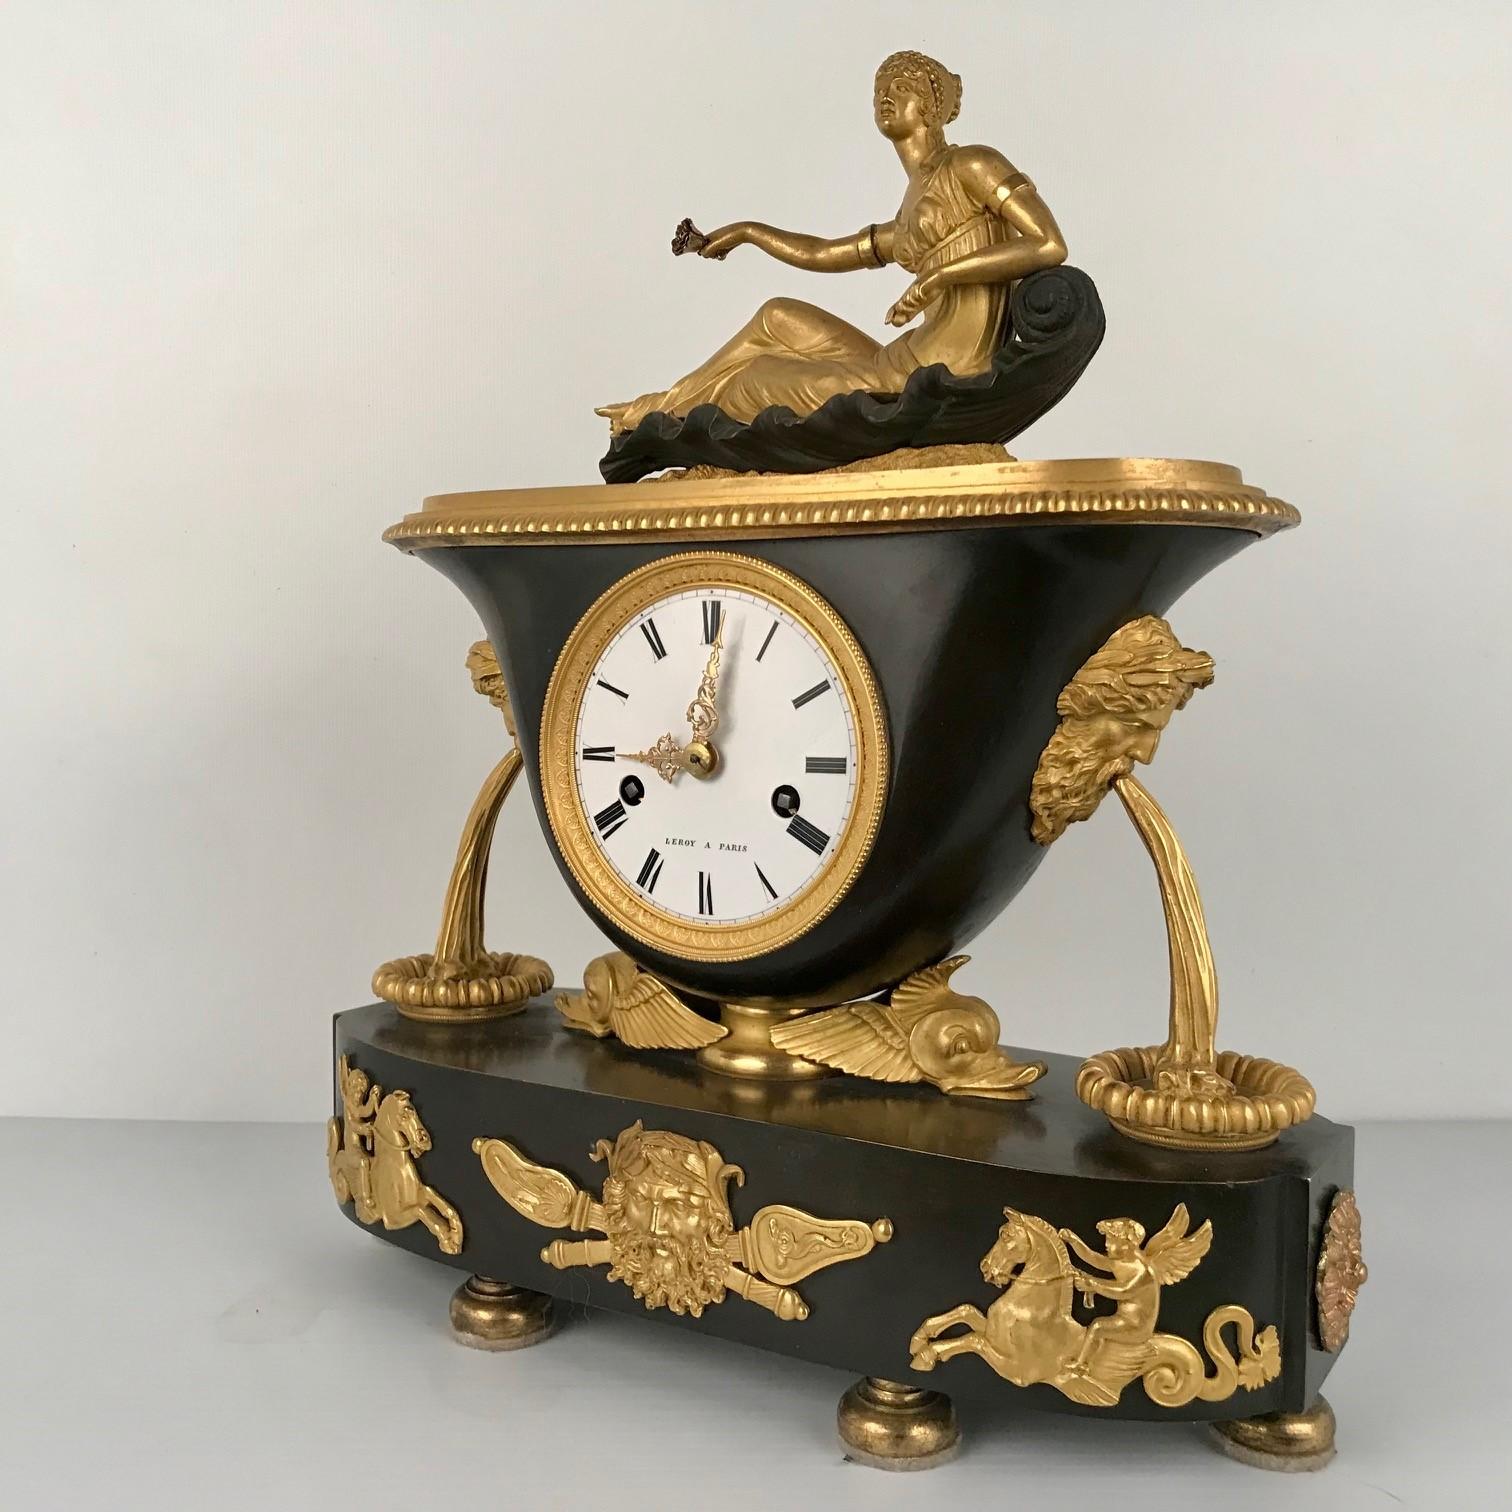 Diese Manteluhr ist von einem angesehenen Pariser Hersteller in einem modischen Stil. Der ovale Sockel trägt ein vasenförmiges Uhrengehäuse, das wiederum von geflügelten Delphinköpfen getragen und von stilisierten Fontänen flankiert wird. Der obere